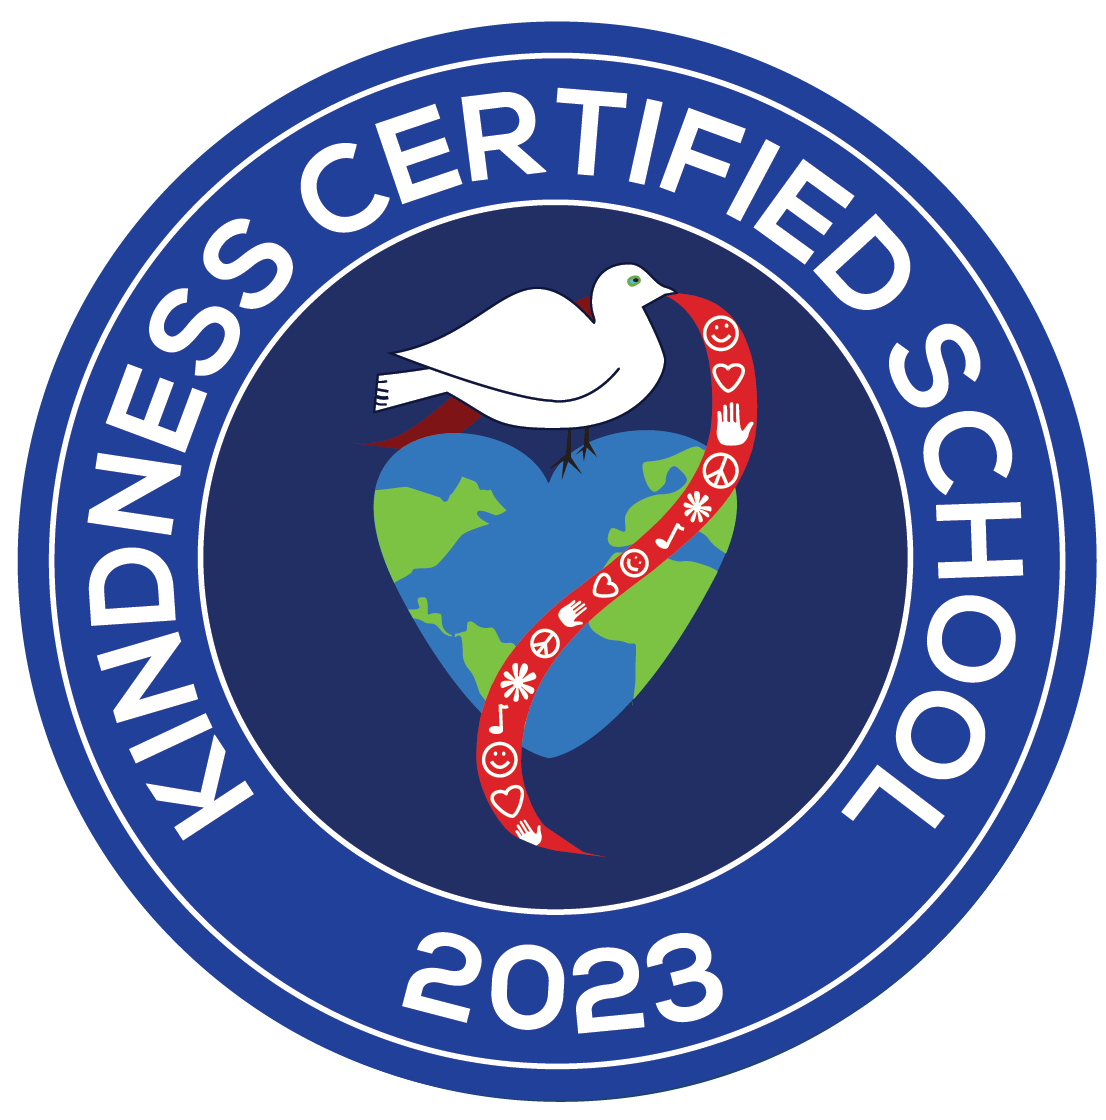 Kindness Certified School 2023 - logo